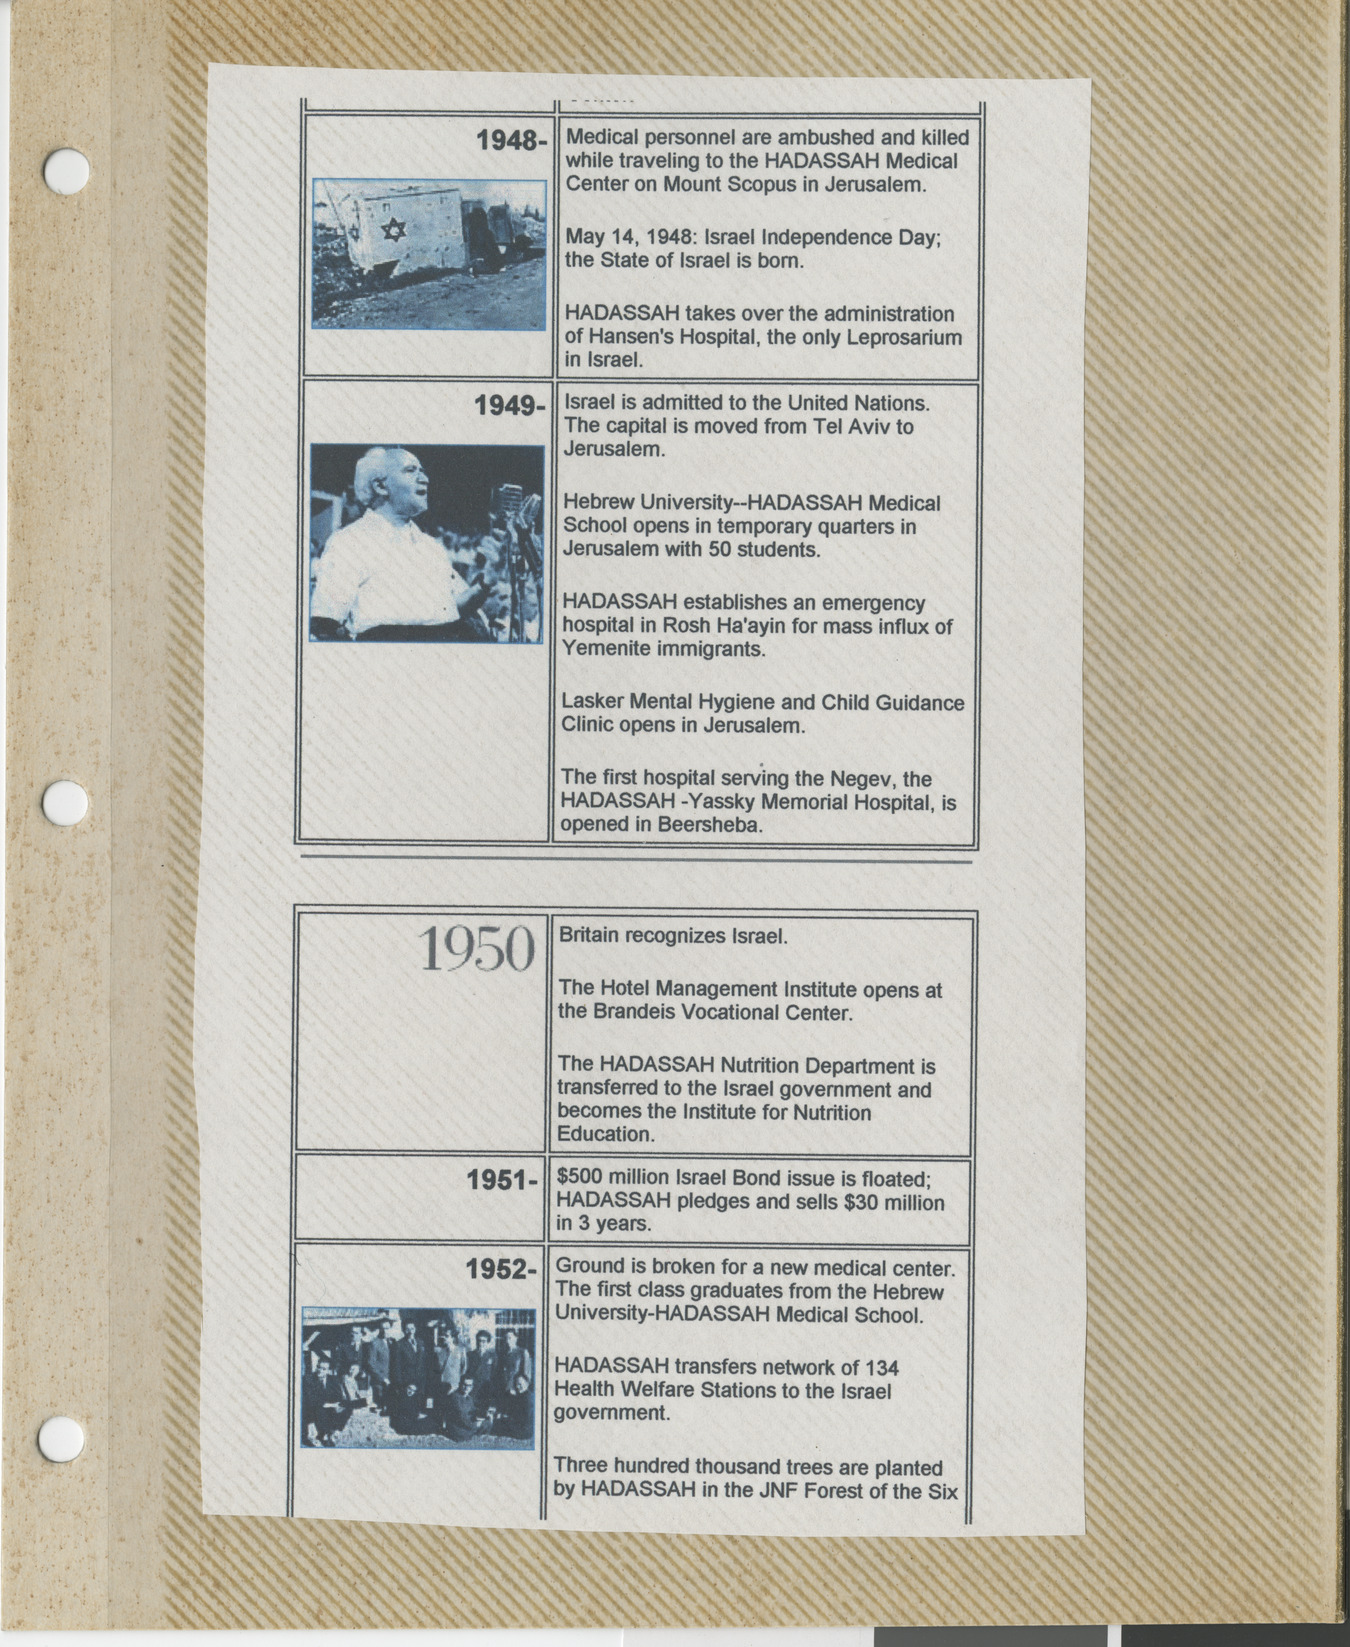 Clipping, Hadassah timeline 1948-1952